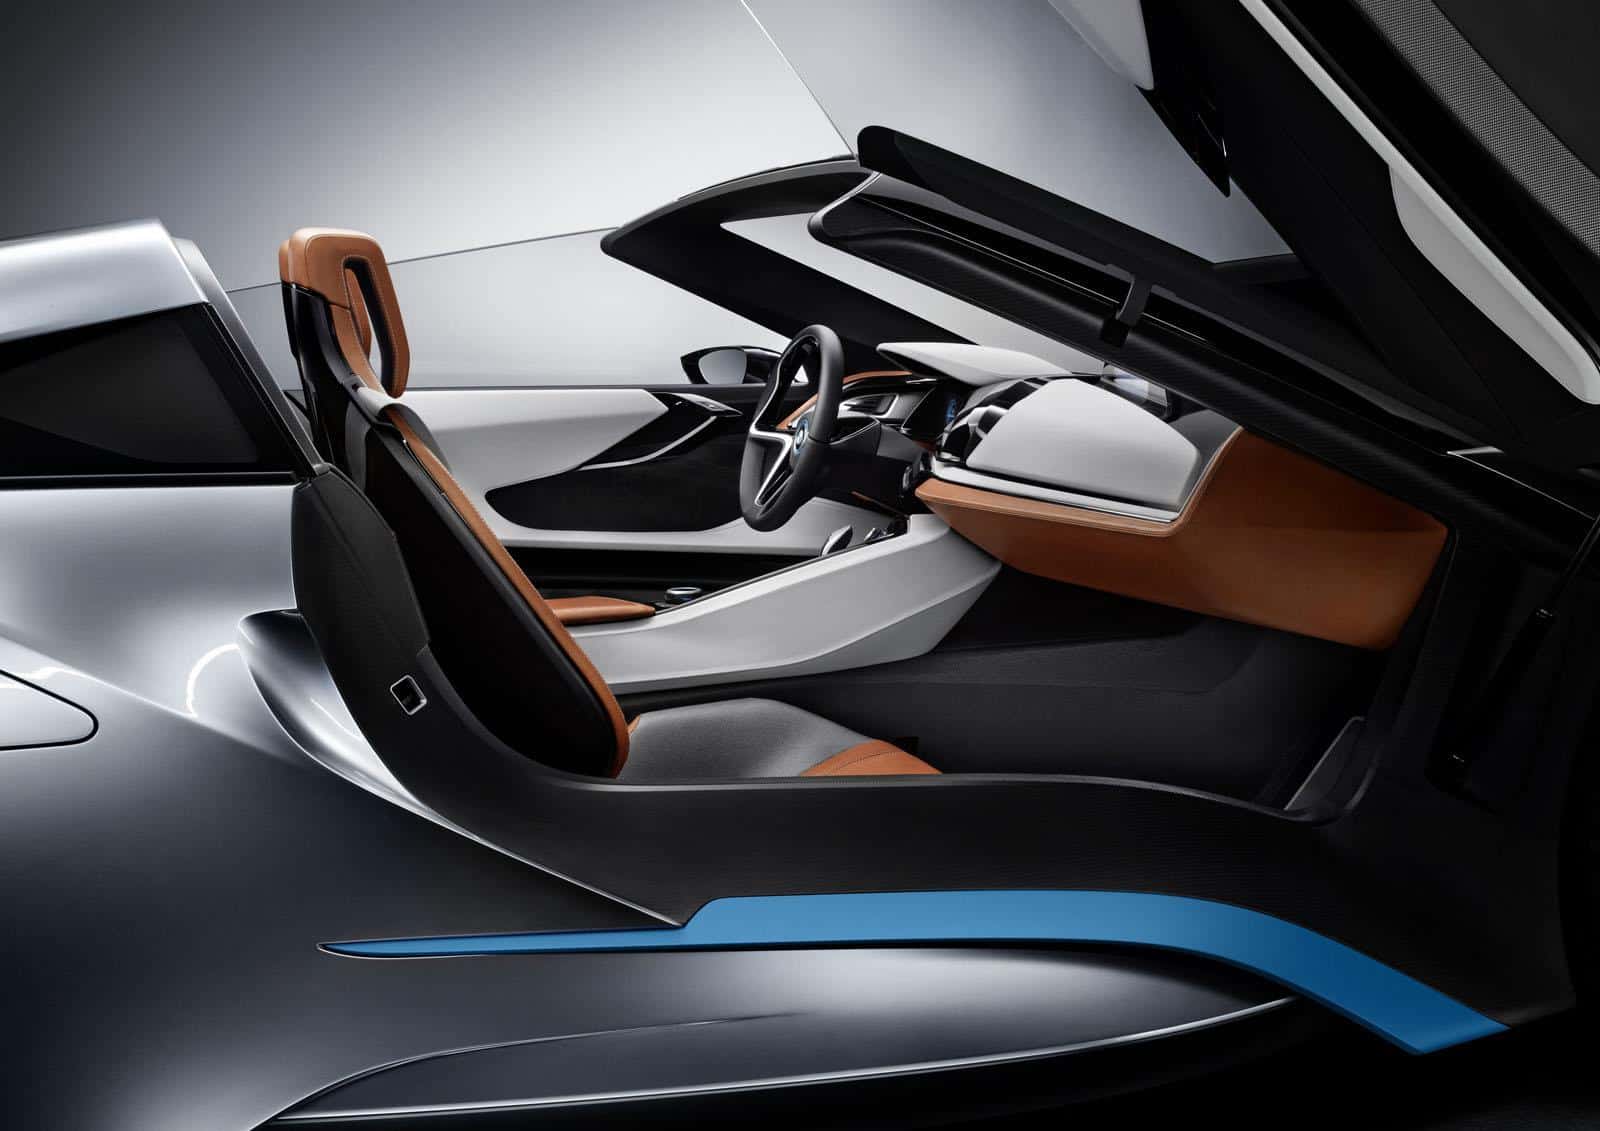 BMW i8 Concept Spyder 22